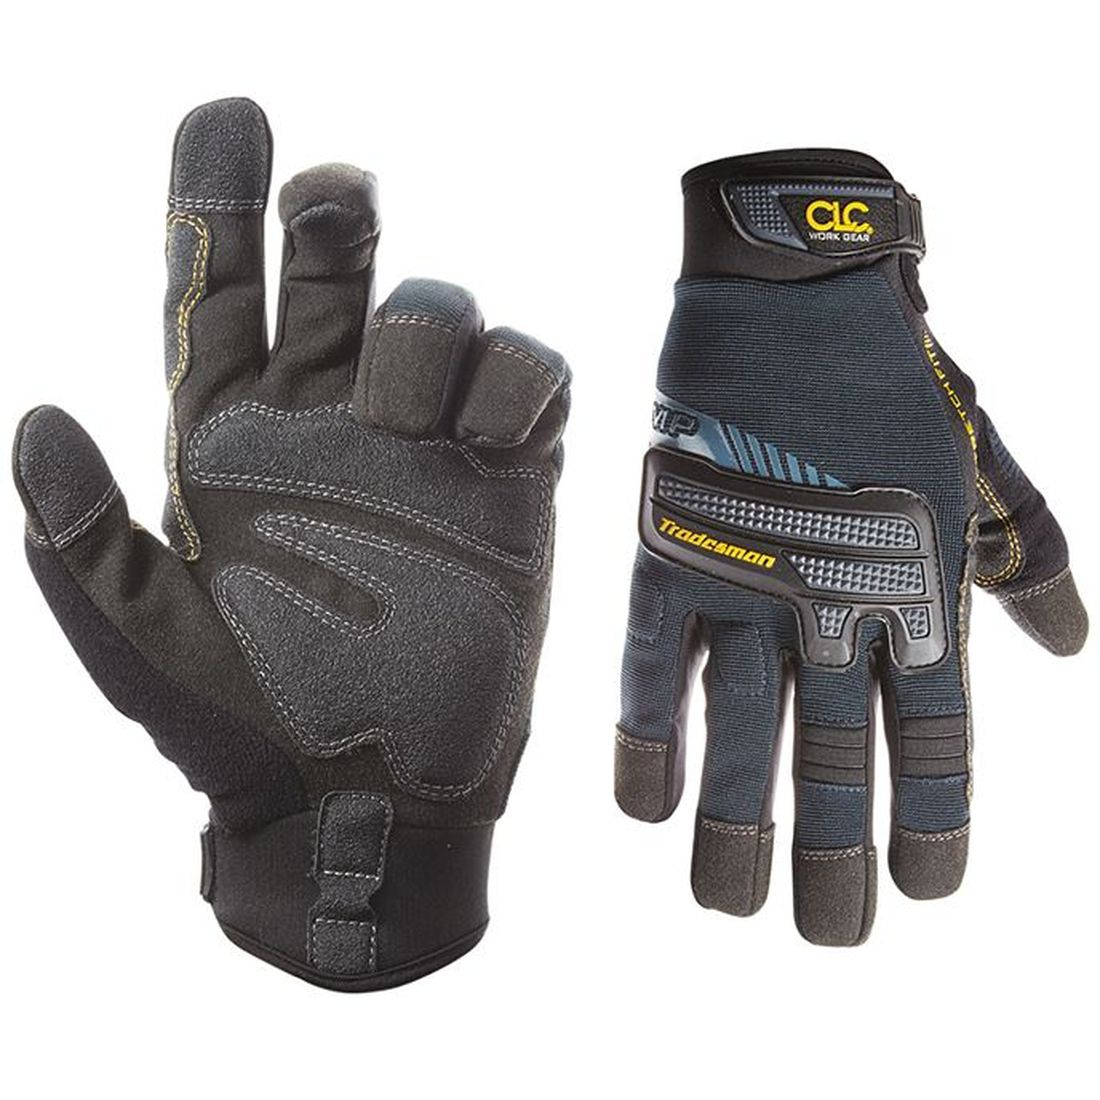 Kuny's Tradesman Flex Grip  Gloves - Medium                                           